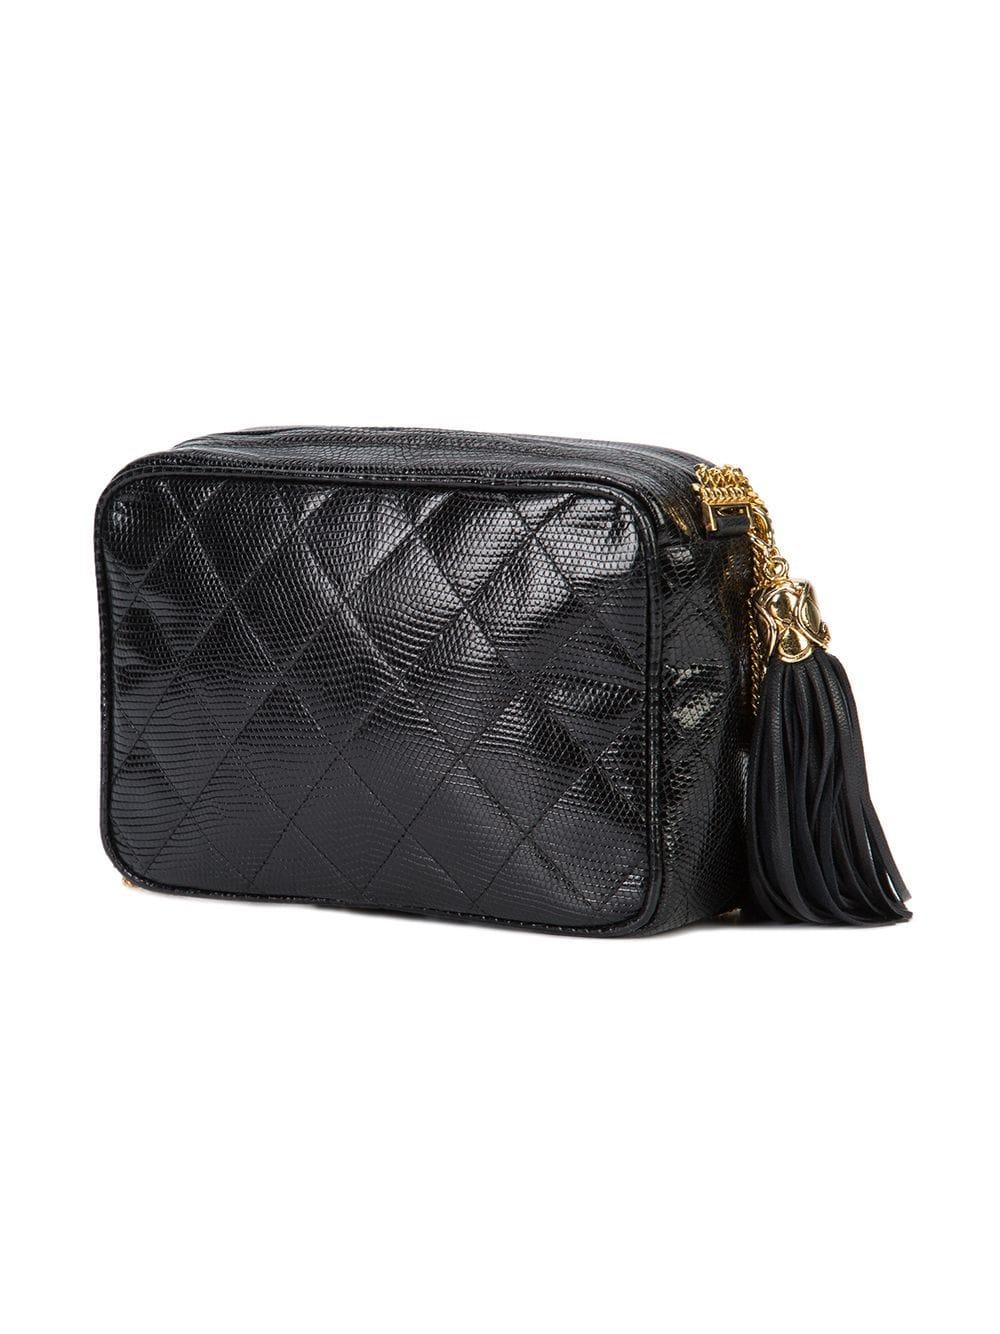 Women's Chanel Vintage Black Lizard Exotic Leather Gold Evening Camera Shoulder Bag